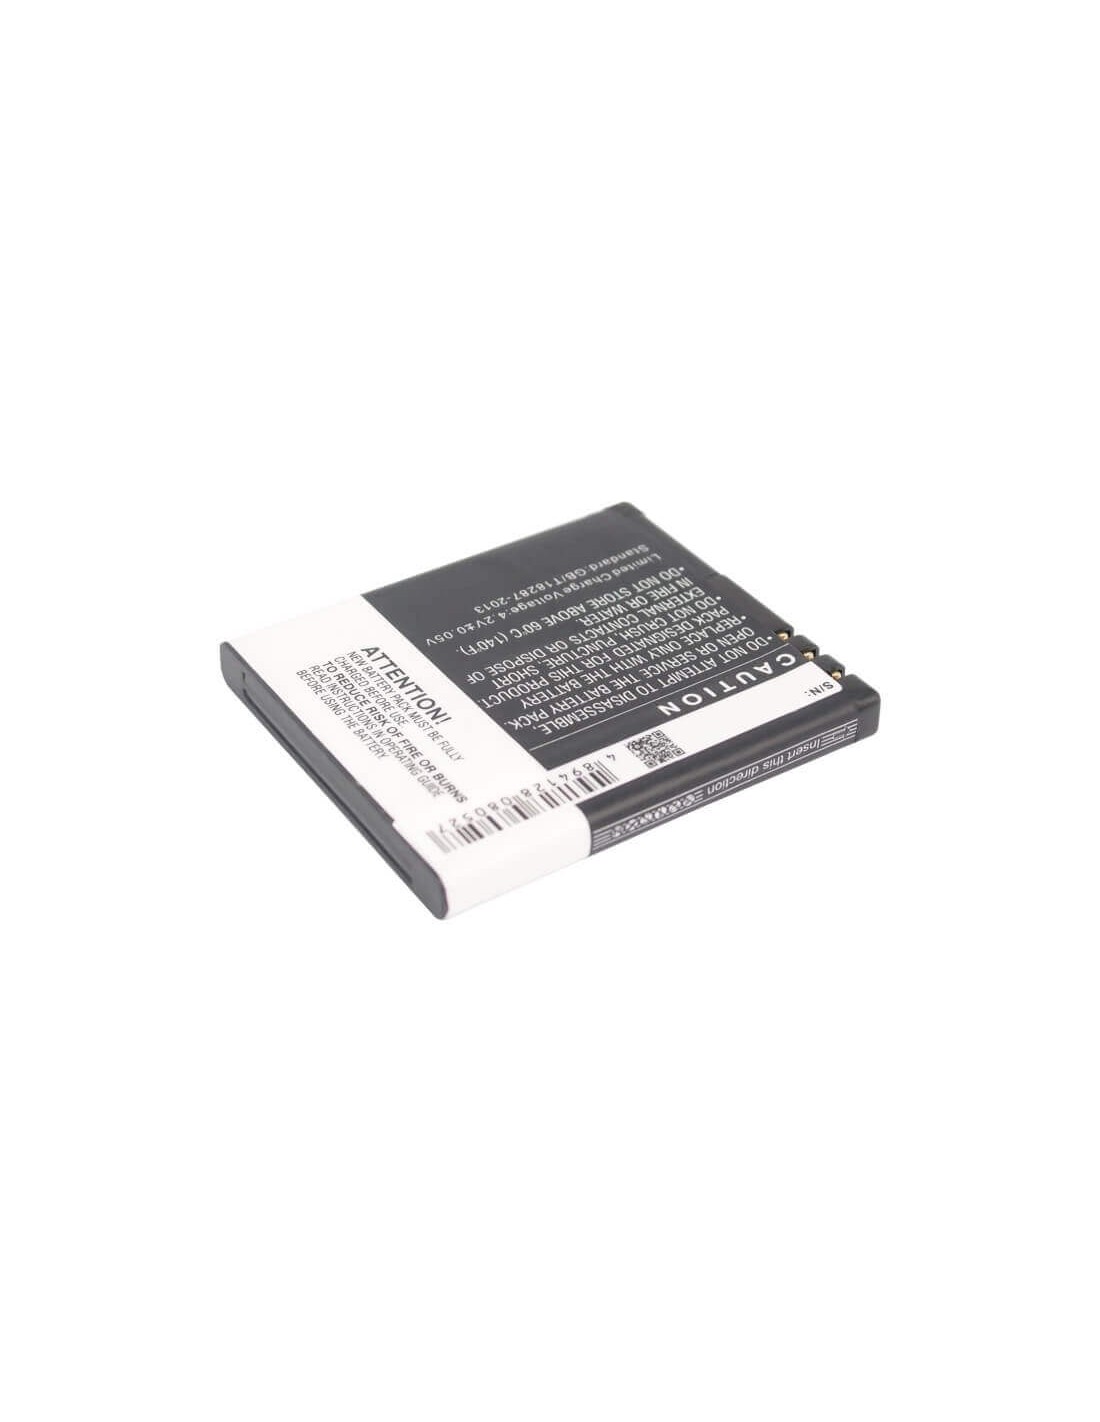 Battery for AURO Classic C2030, C2030 3.7V, 900mAh - 3.33Wh